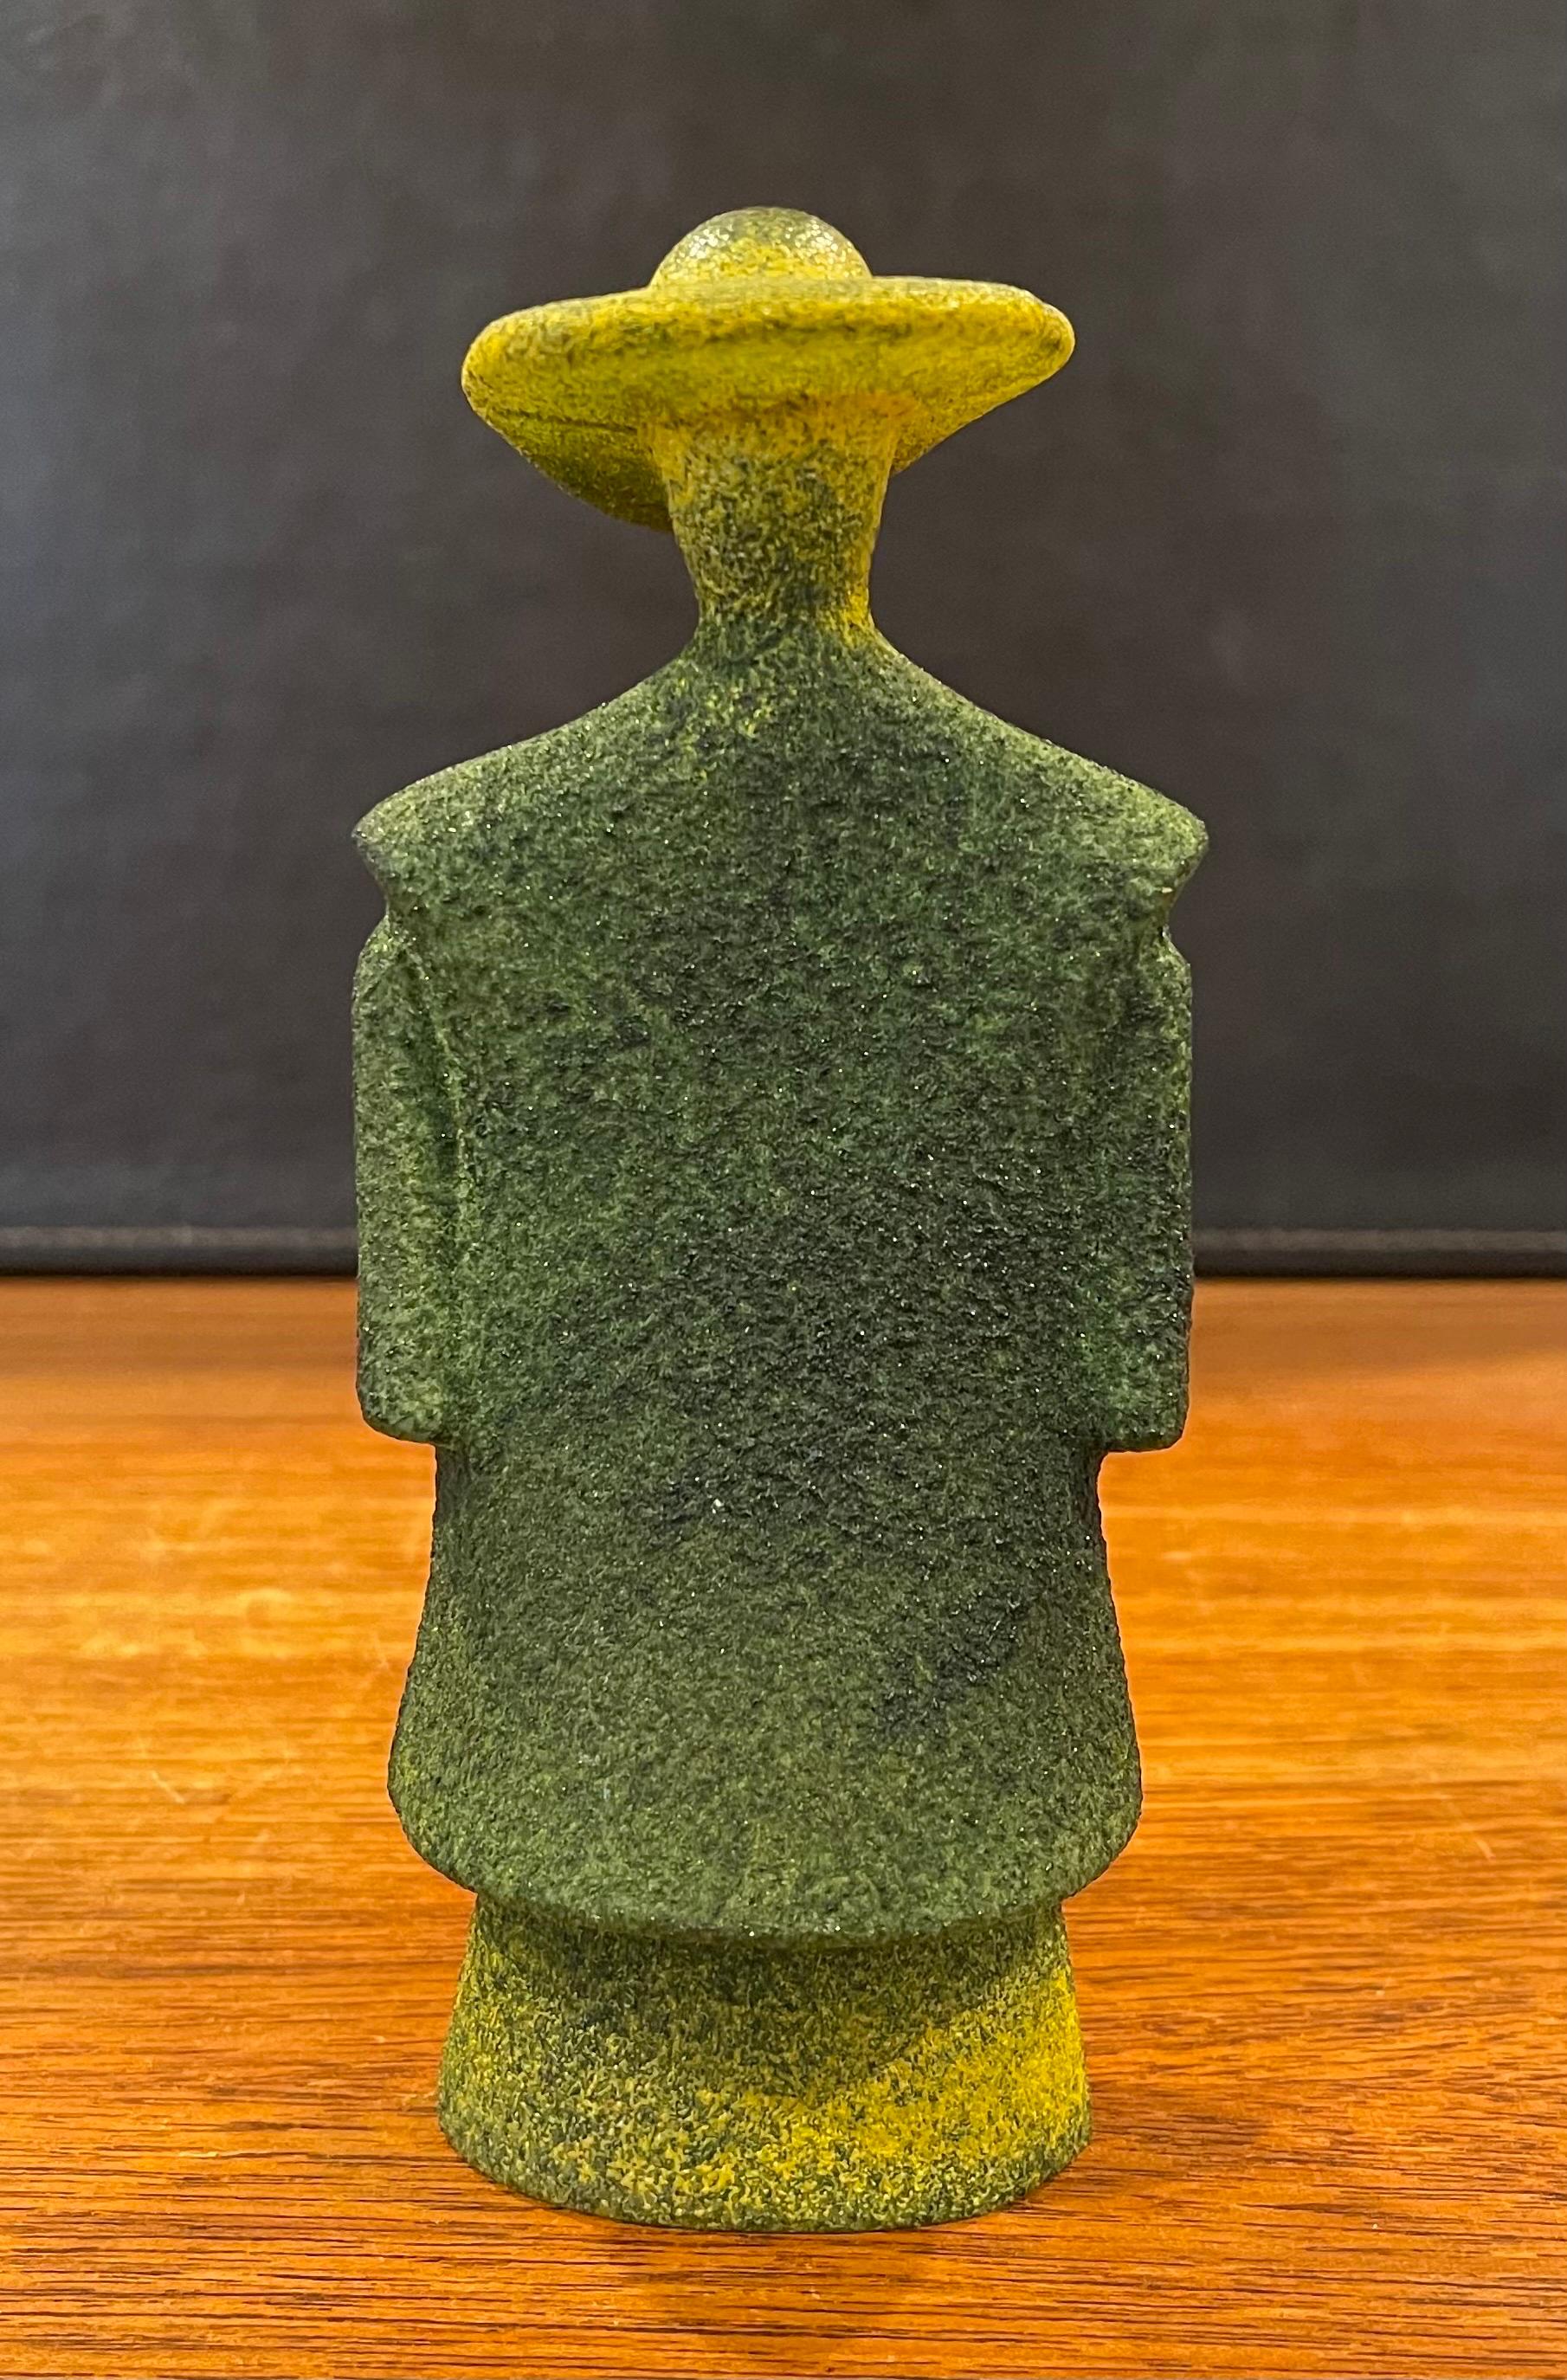 Poncho Green Art Glass Catwalk Sculpture by Kjell Engman for Kosta Boda Sweden For Sale 4